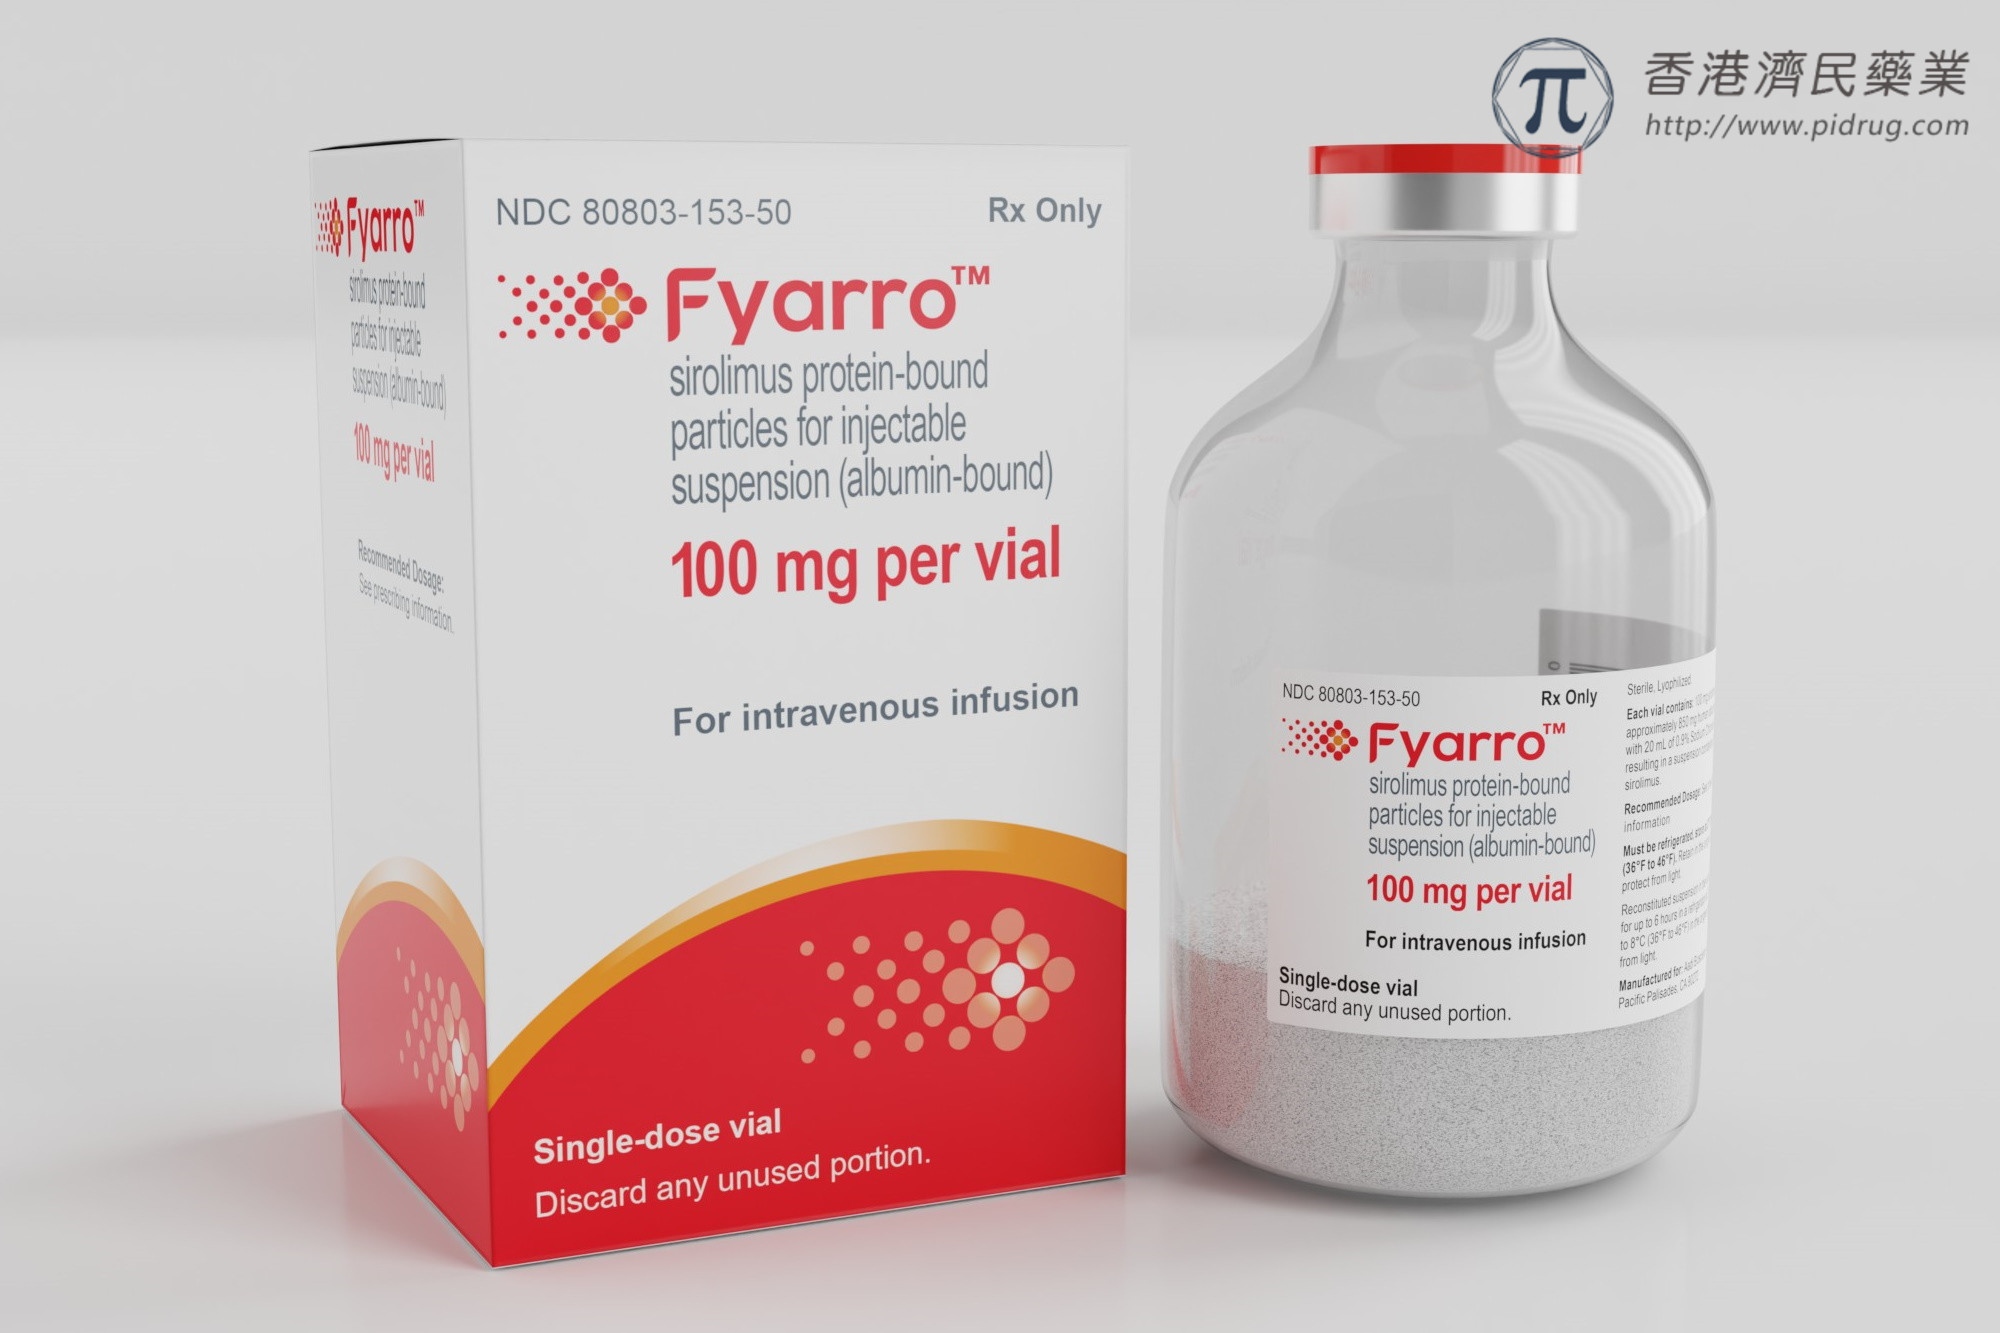 Fyarro(西罗莫司白蛋白结合型纳米颗粒)治疗罕见肉瘤疗效及安全性如何？